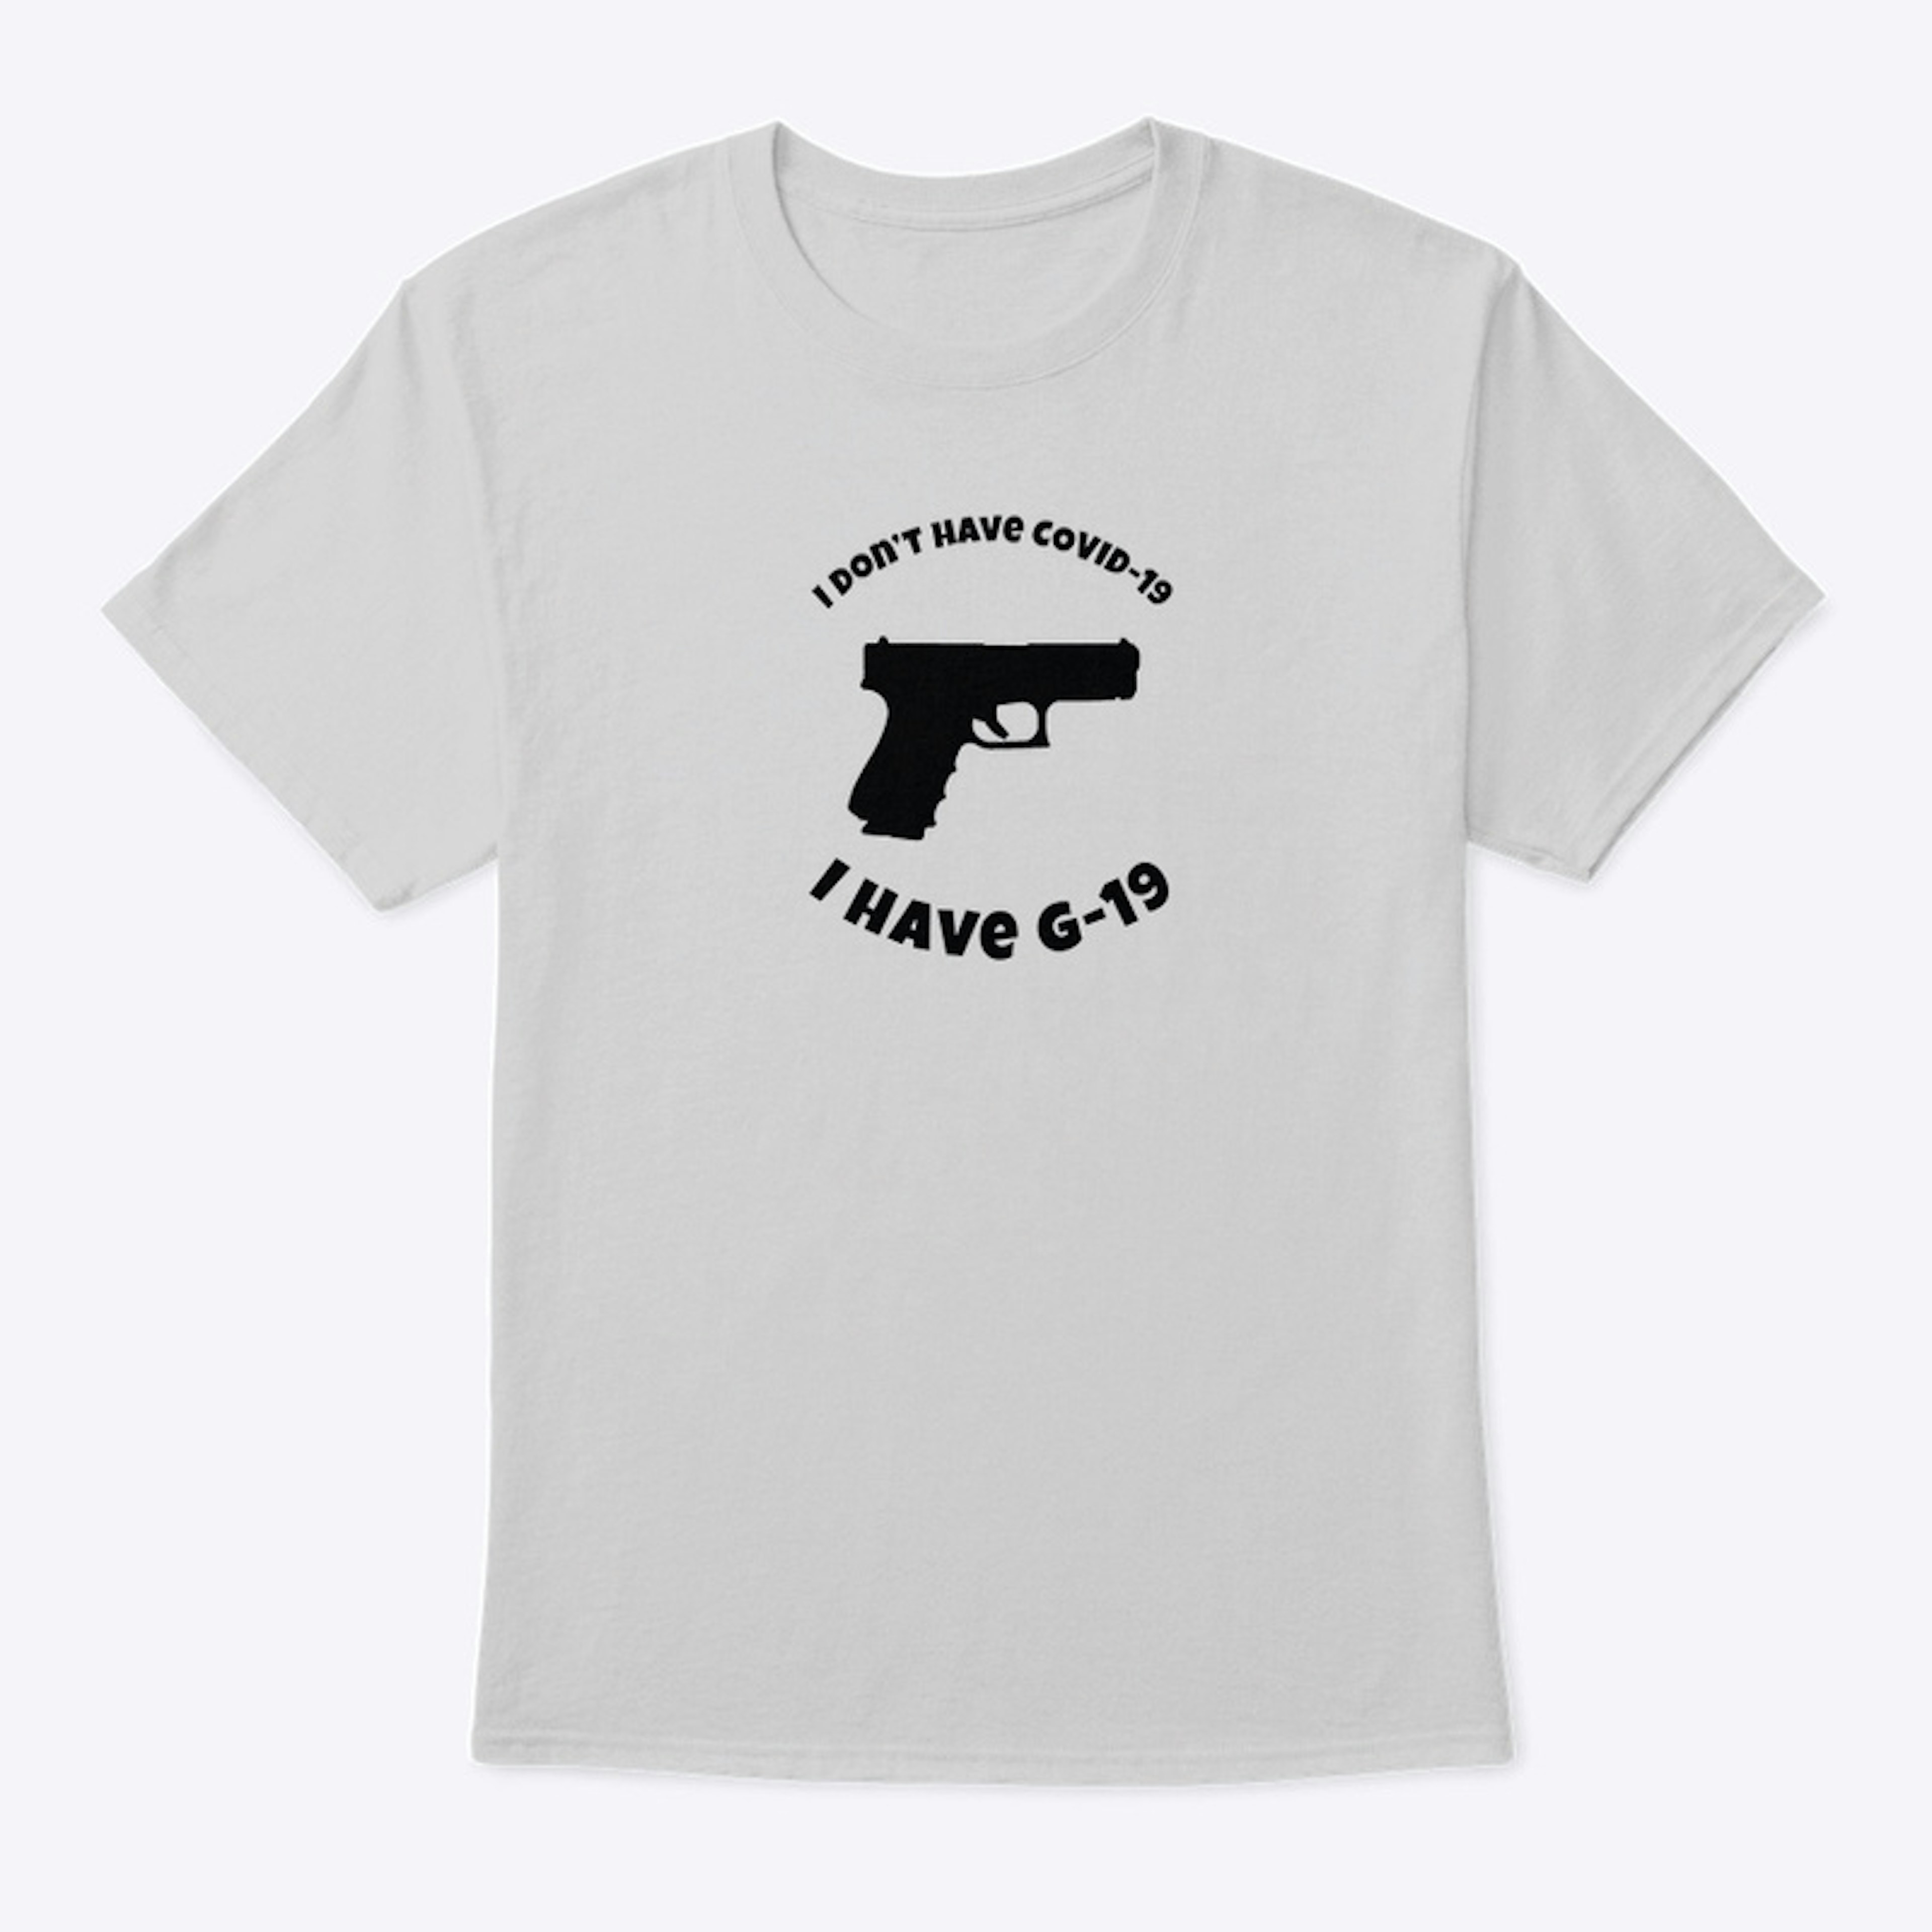 G-19 T-Shirt